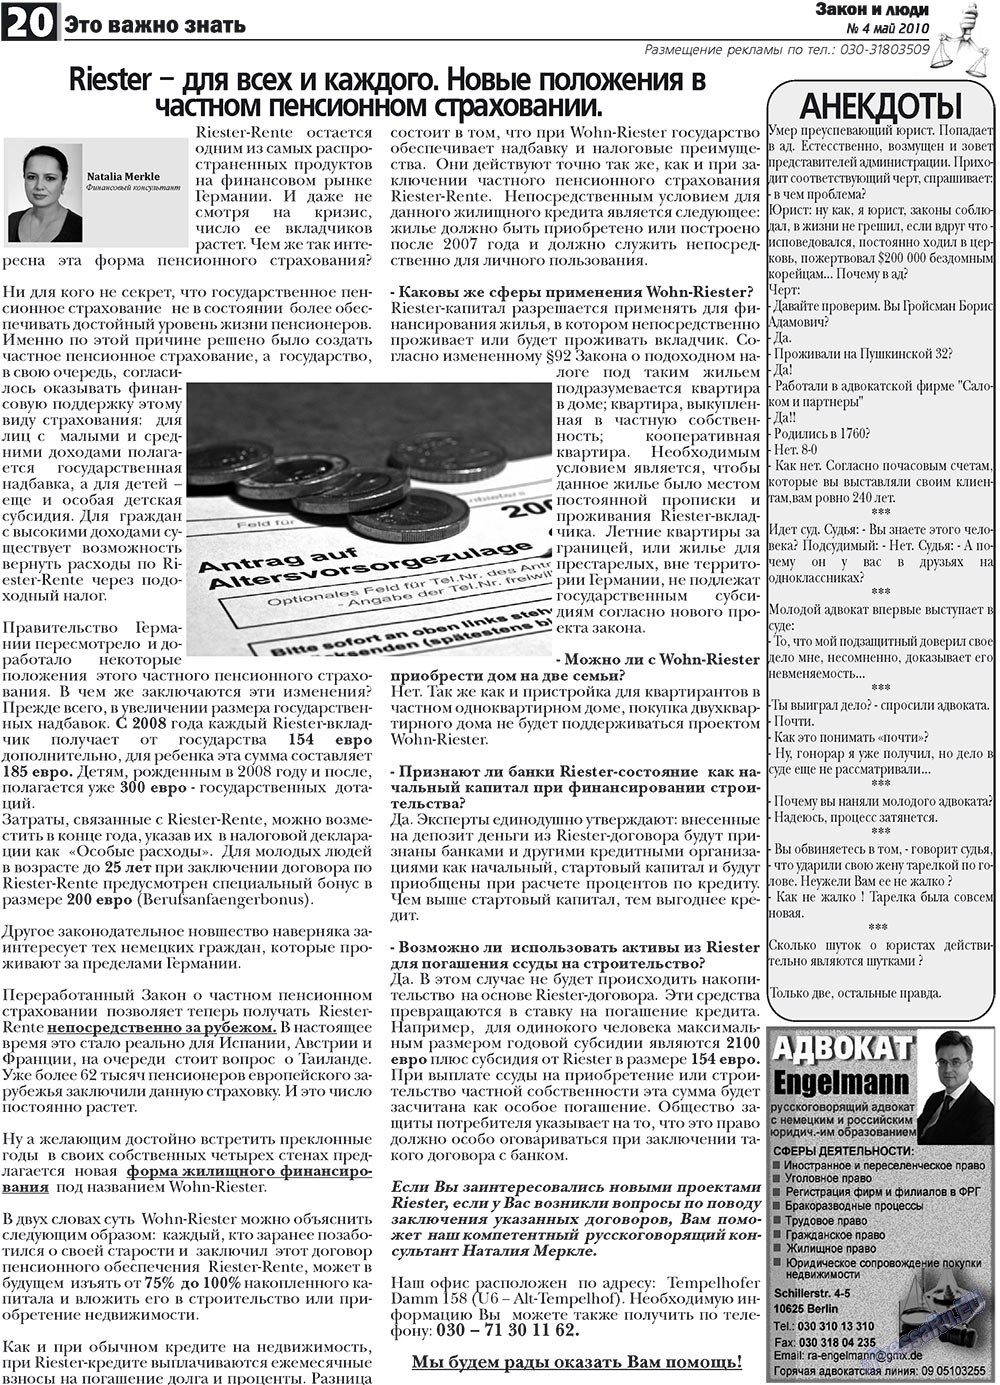 Закон и люди, газета. 2010 №4 стр.20